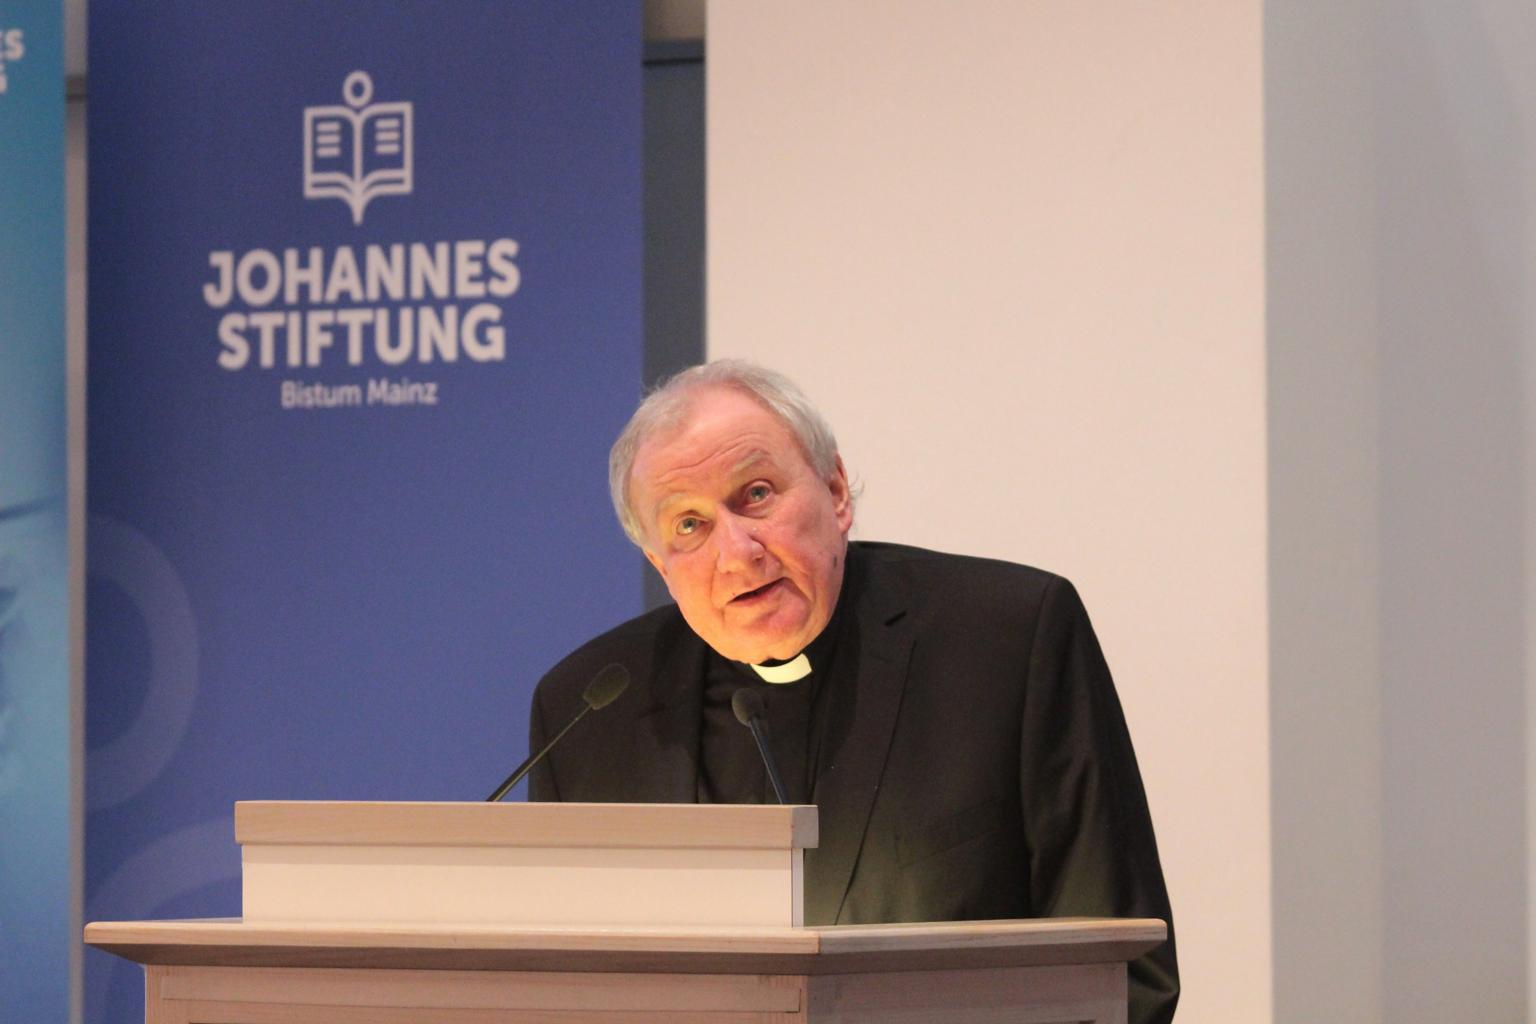 Johannes Stiftung (c) Bistum Mainz / Blum